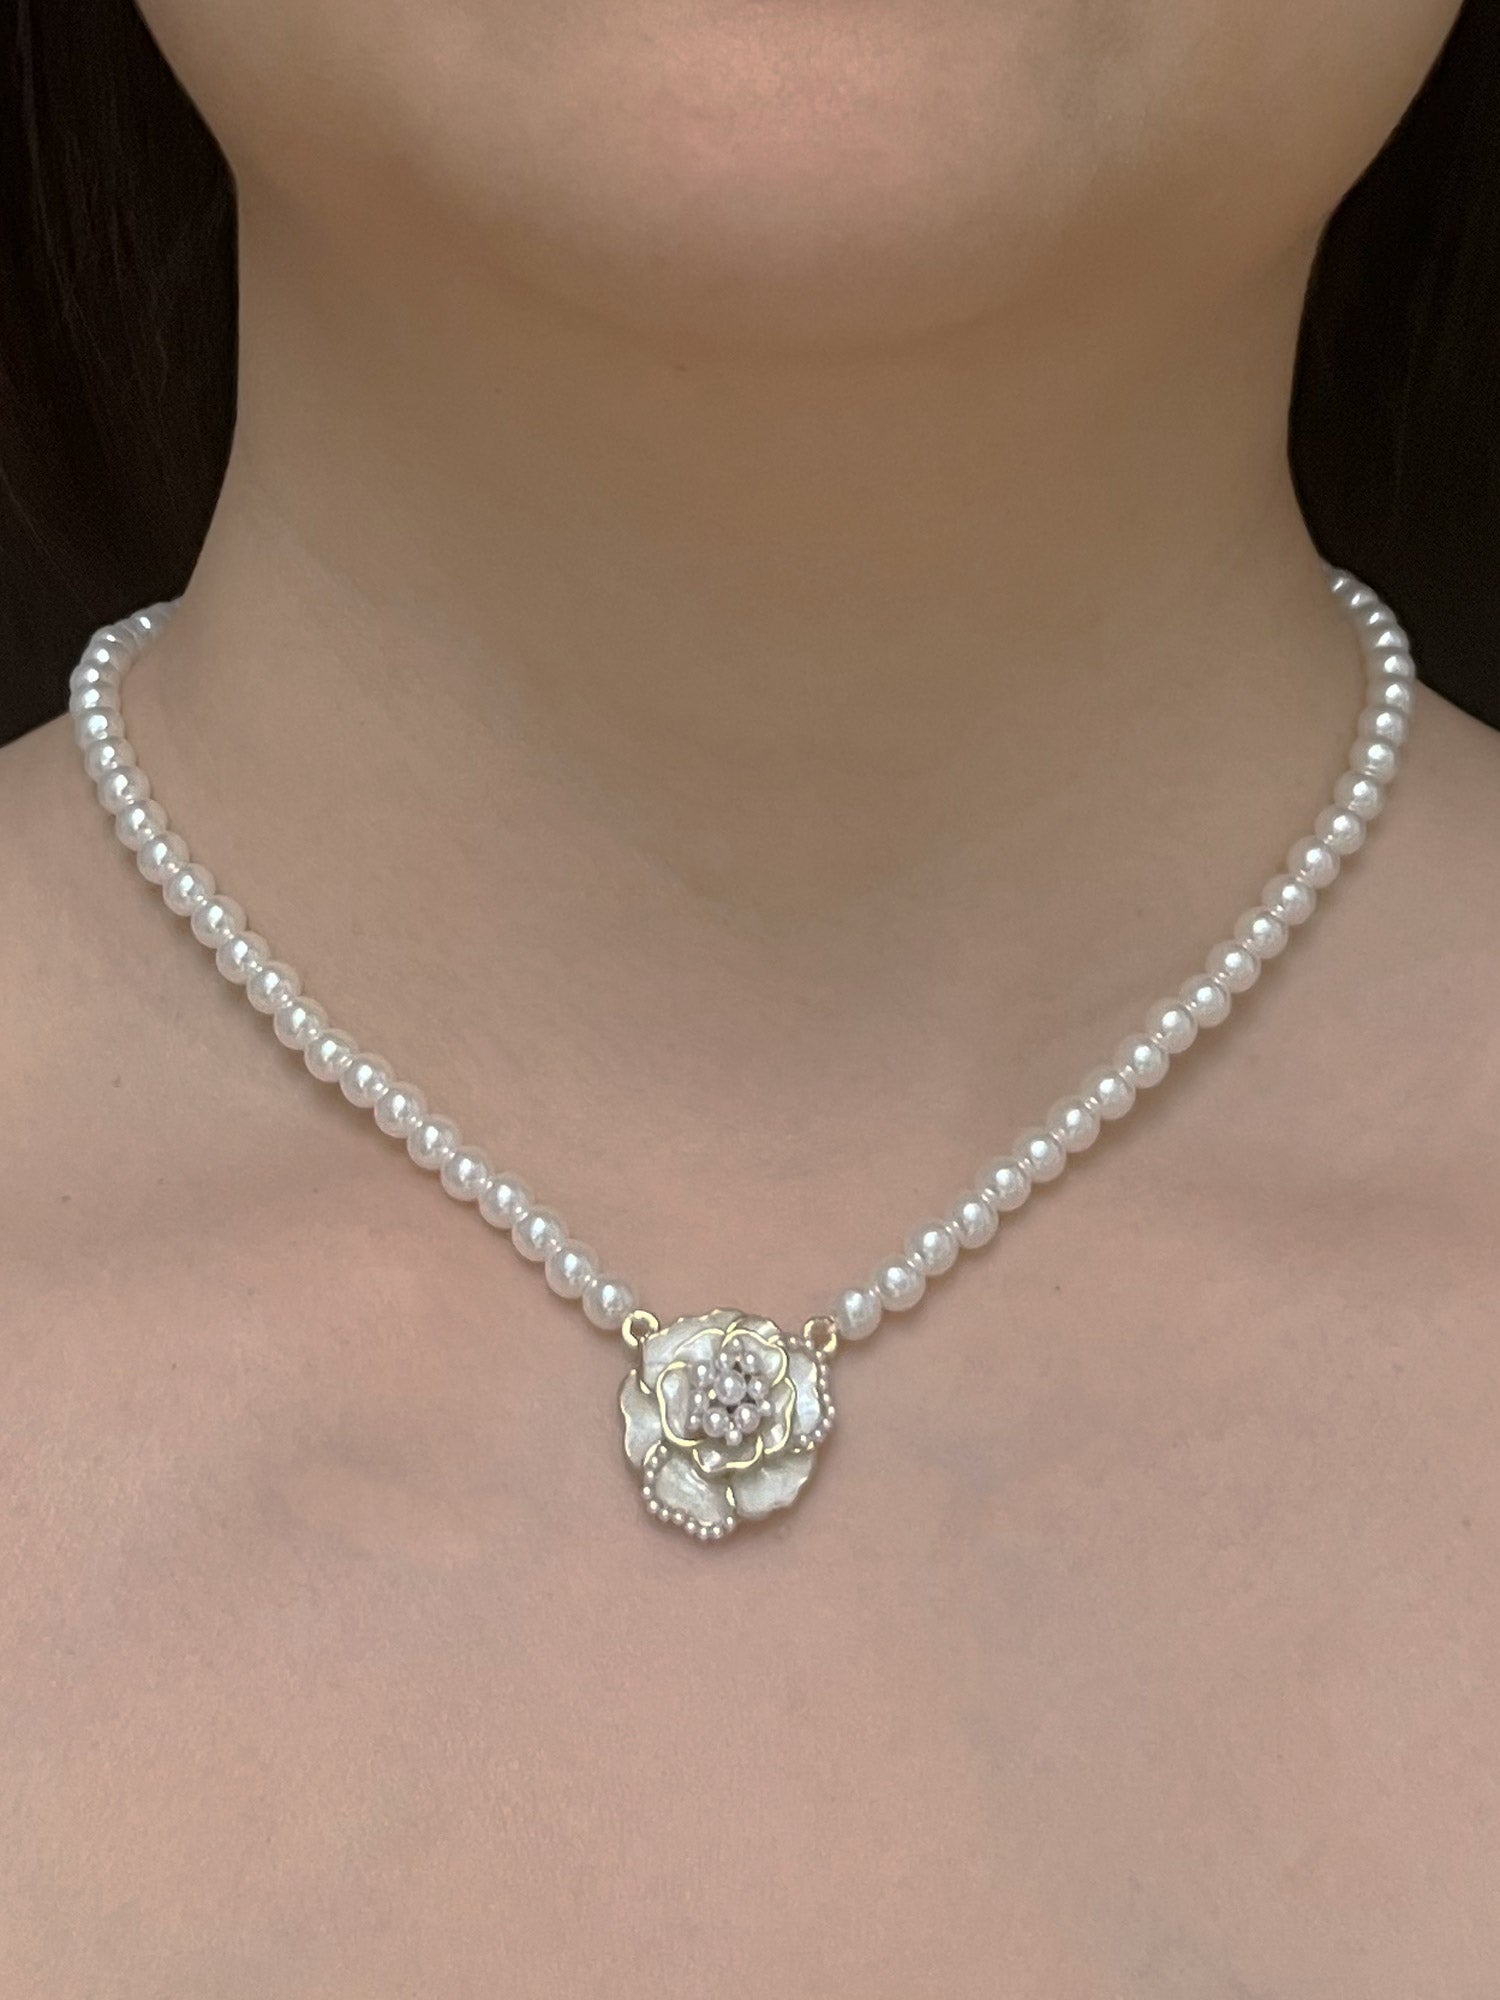 Tour de cou en perles avec pendentif fleur